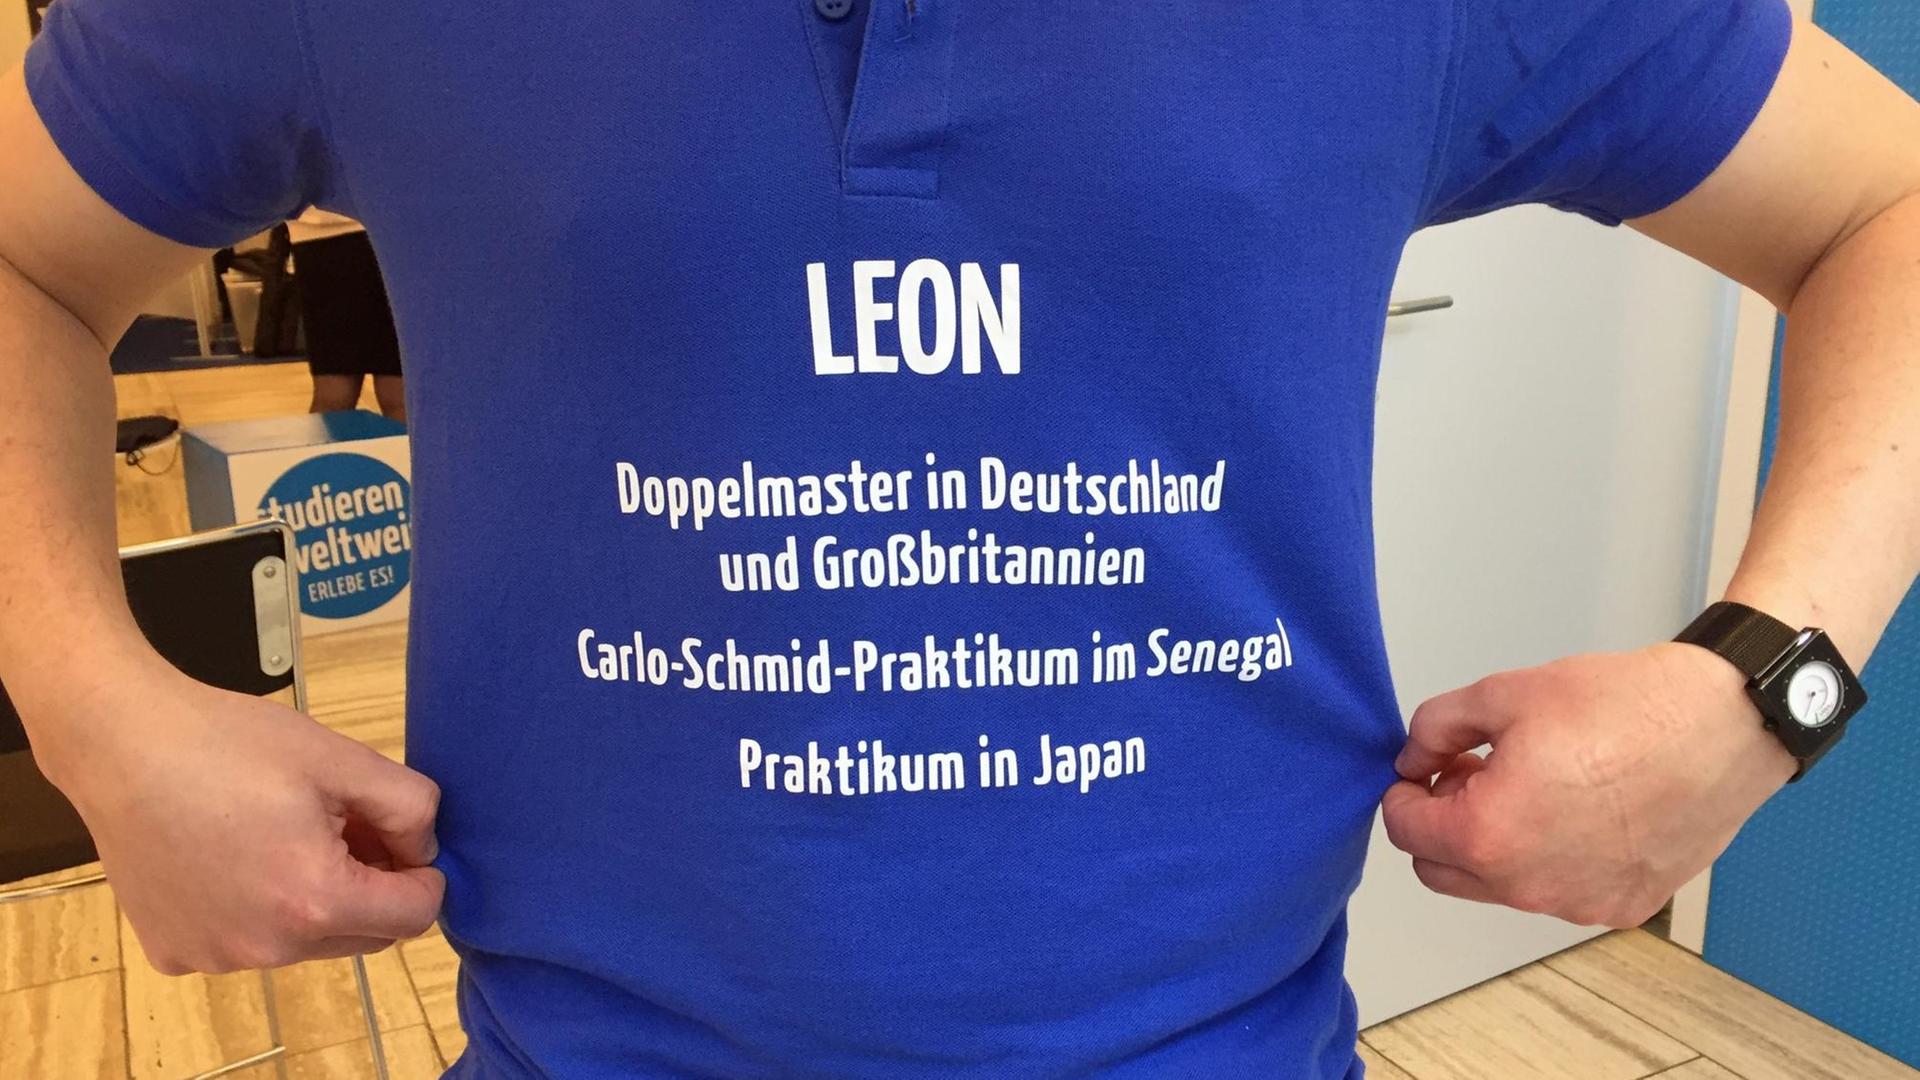 Die Aufschrift eines blauen T-Shirts zeigt: Leon - Doppelmaster in Deutschland und Großbritannien, Carlo-Schmid-Praktikum im Senegal - Praktikum in Japan